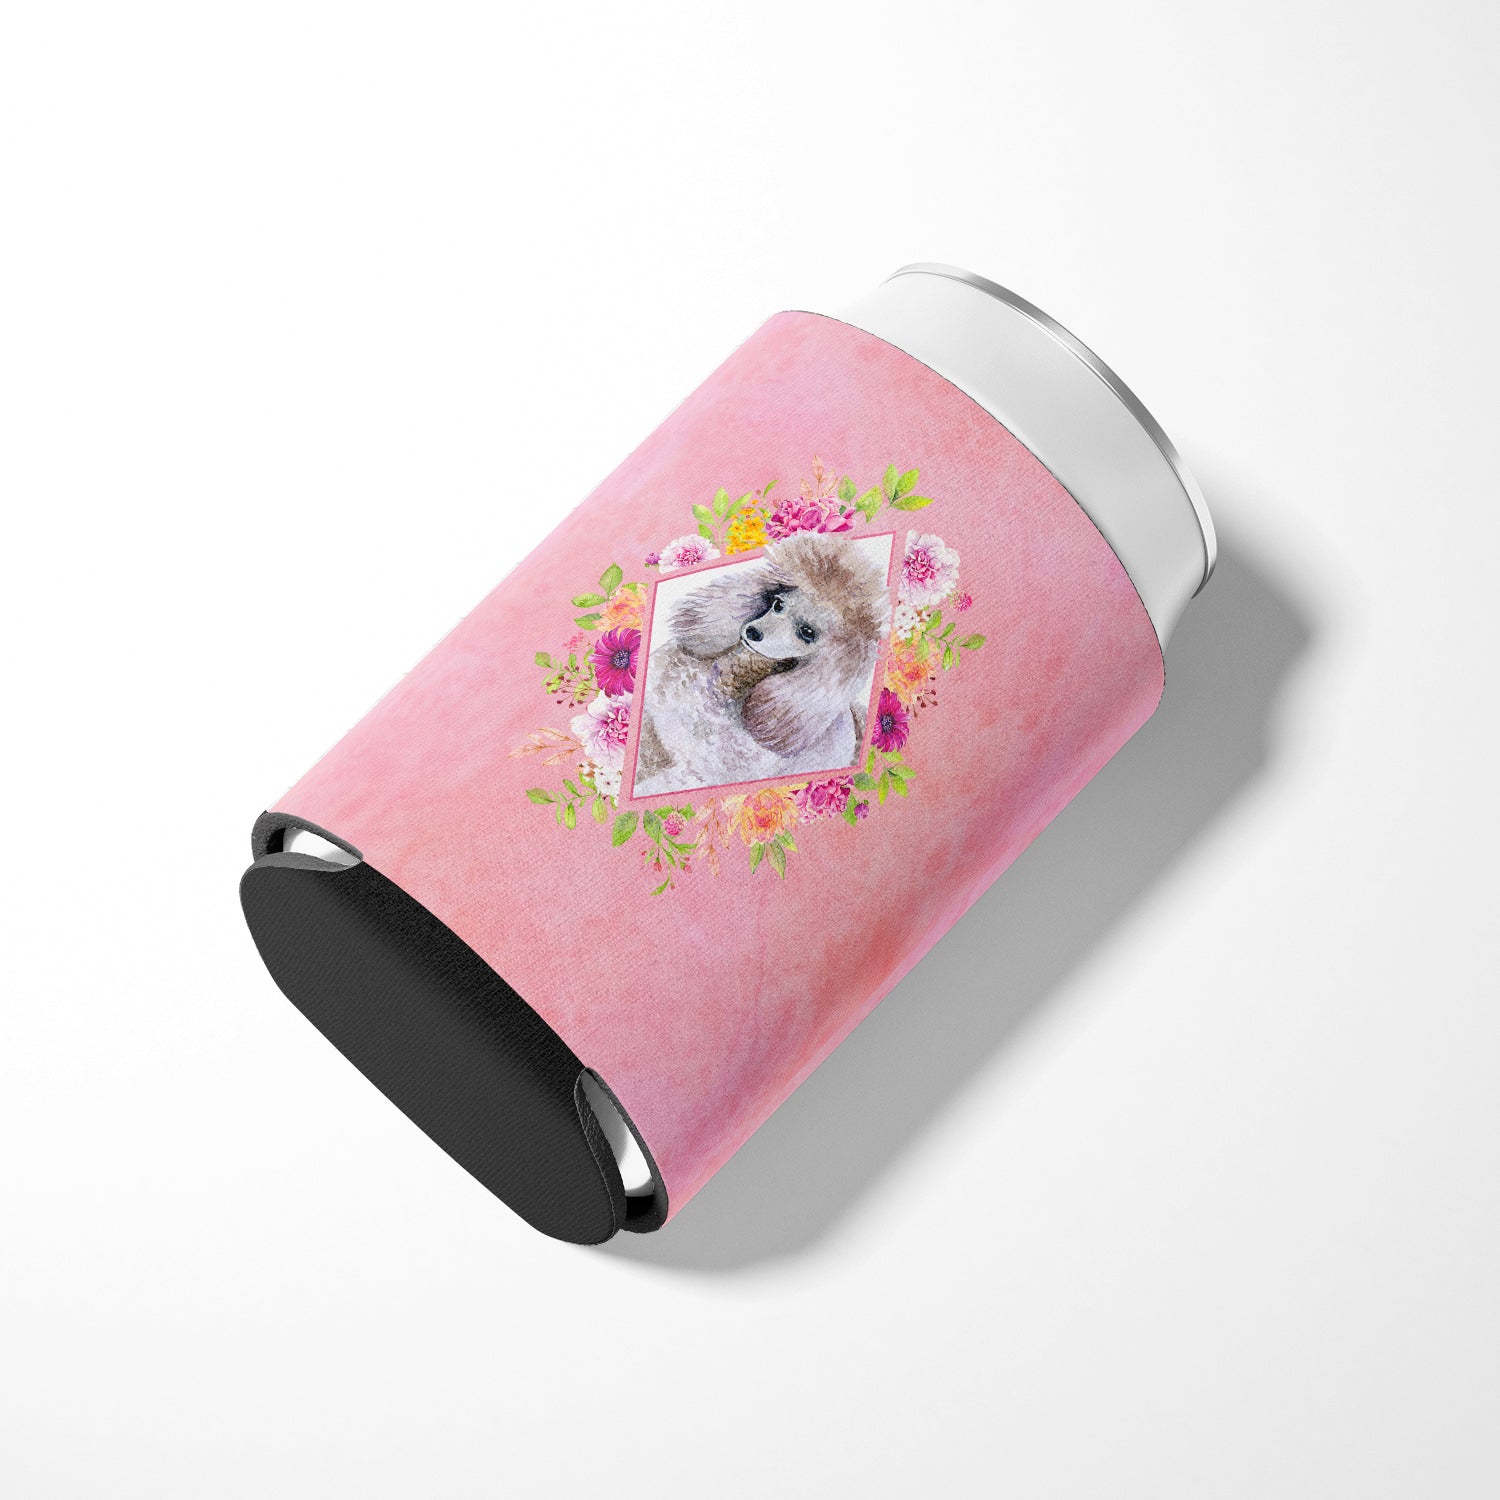 Standard Grey Poodle Pink Flowers Can or Bottle Hugger CK4173CC